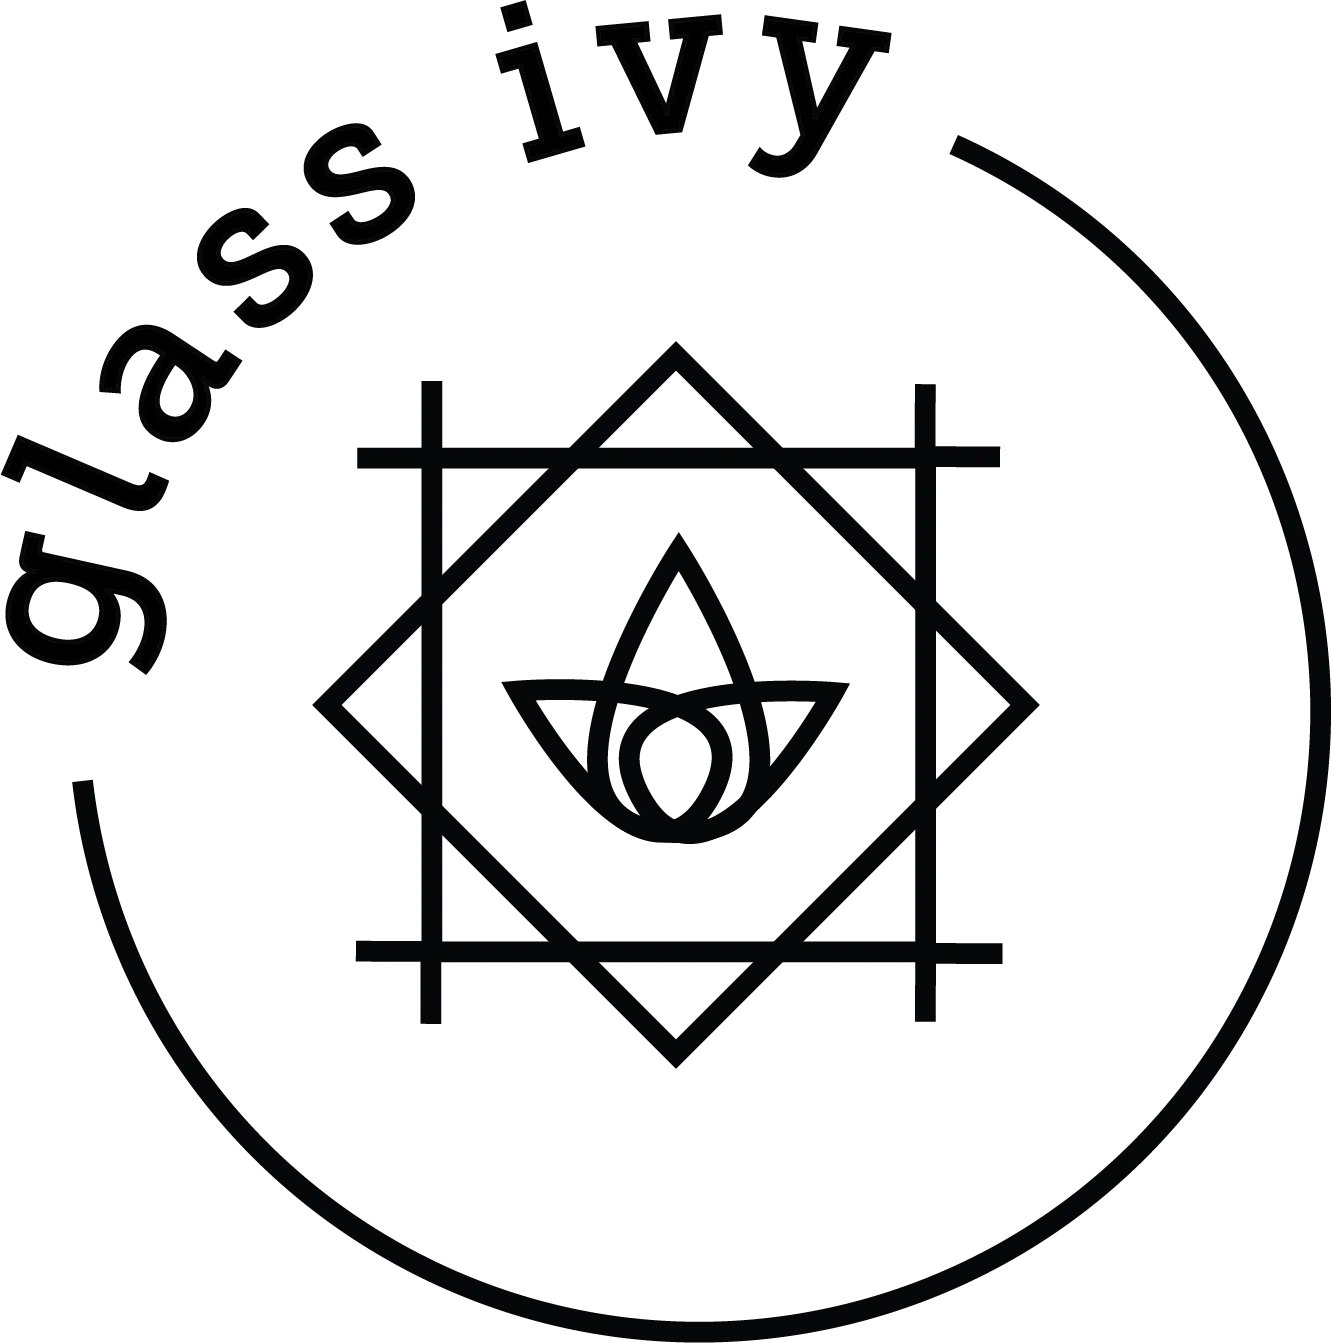 northwest arkansas marketing logo glassivy